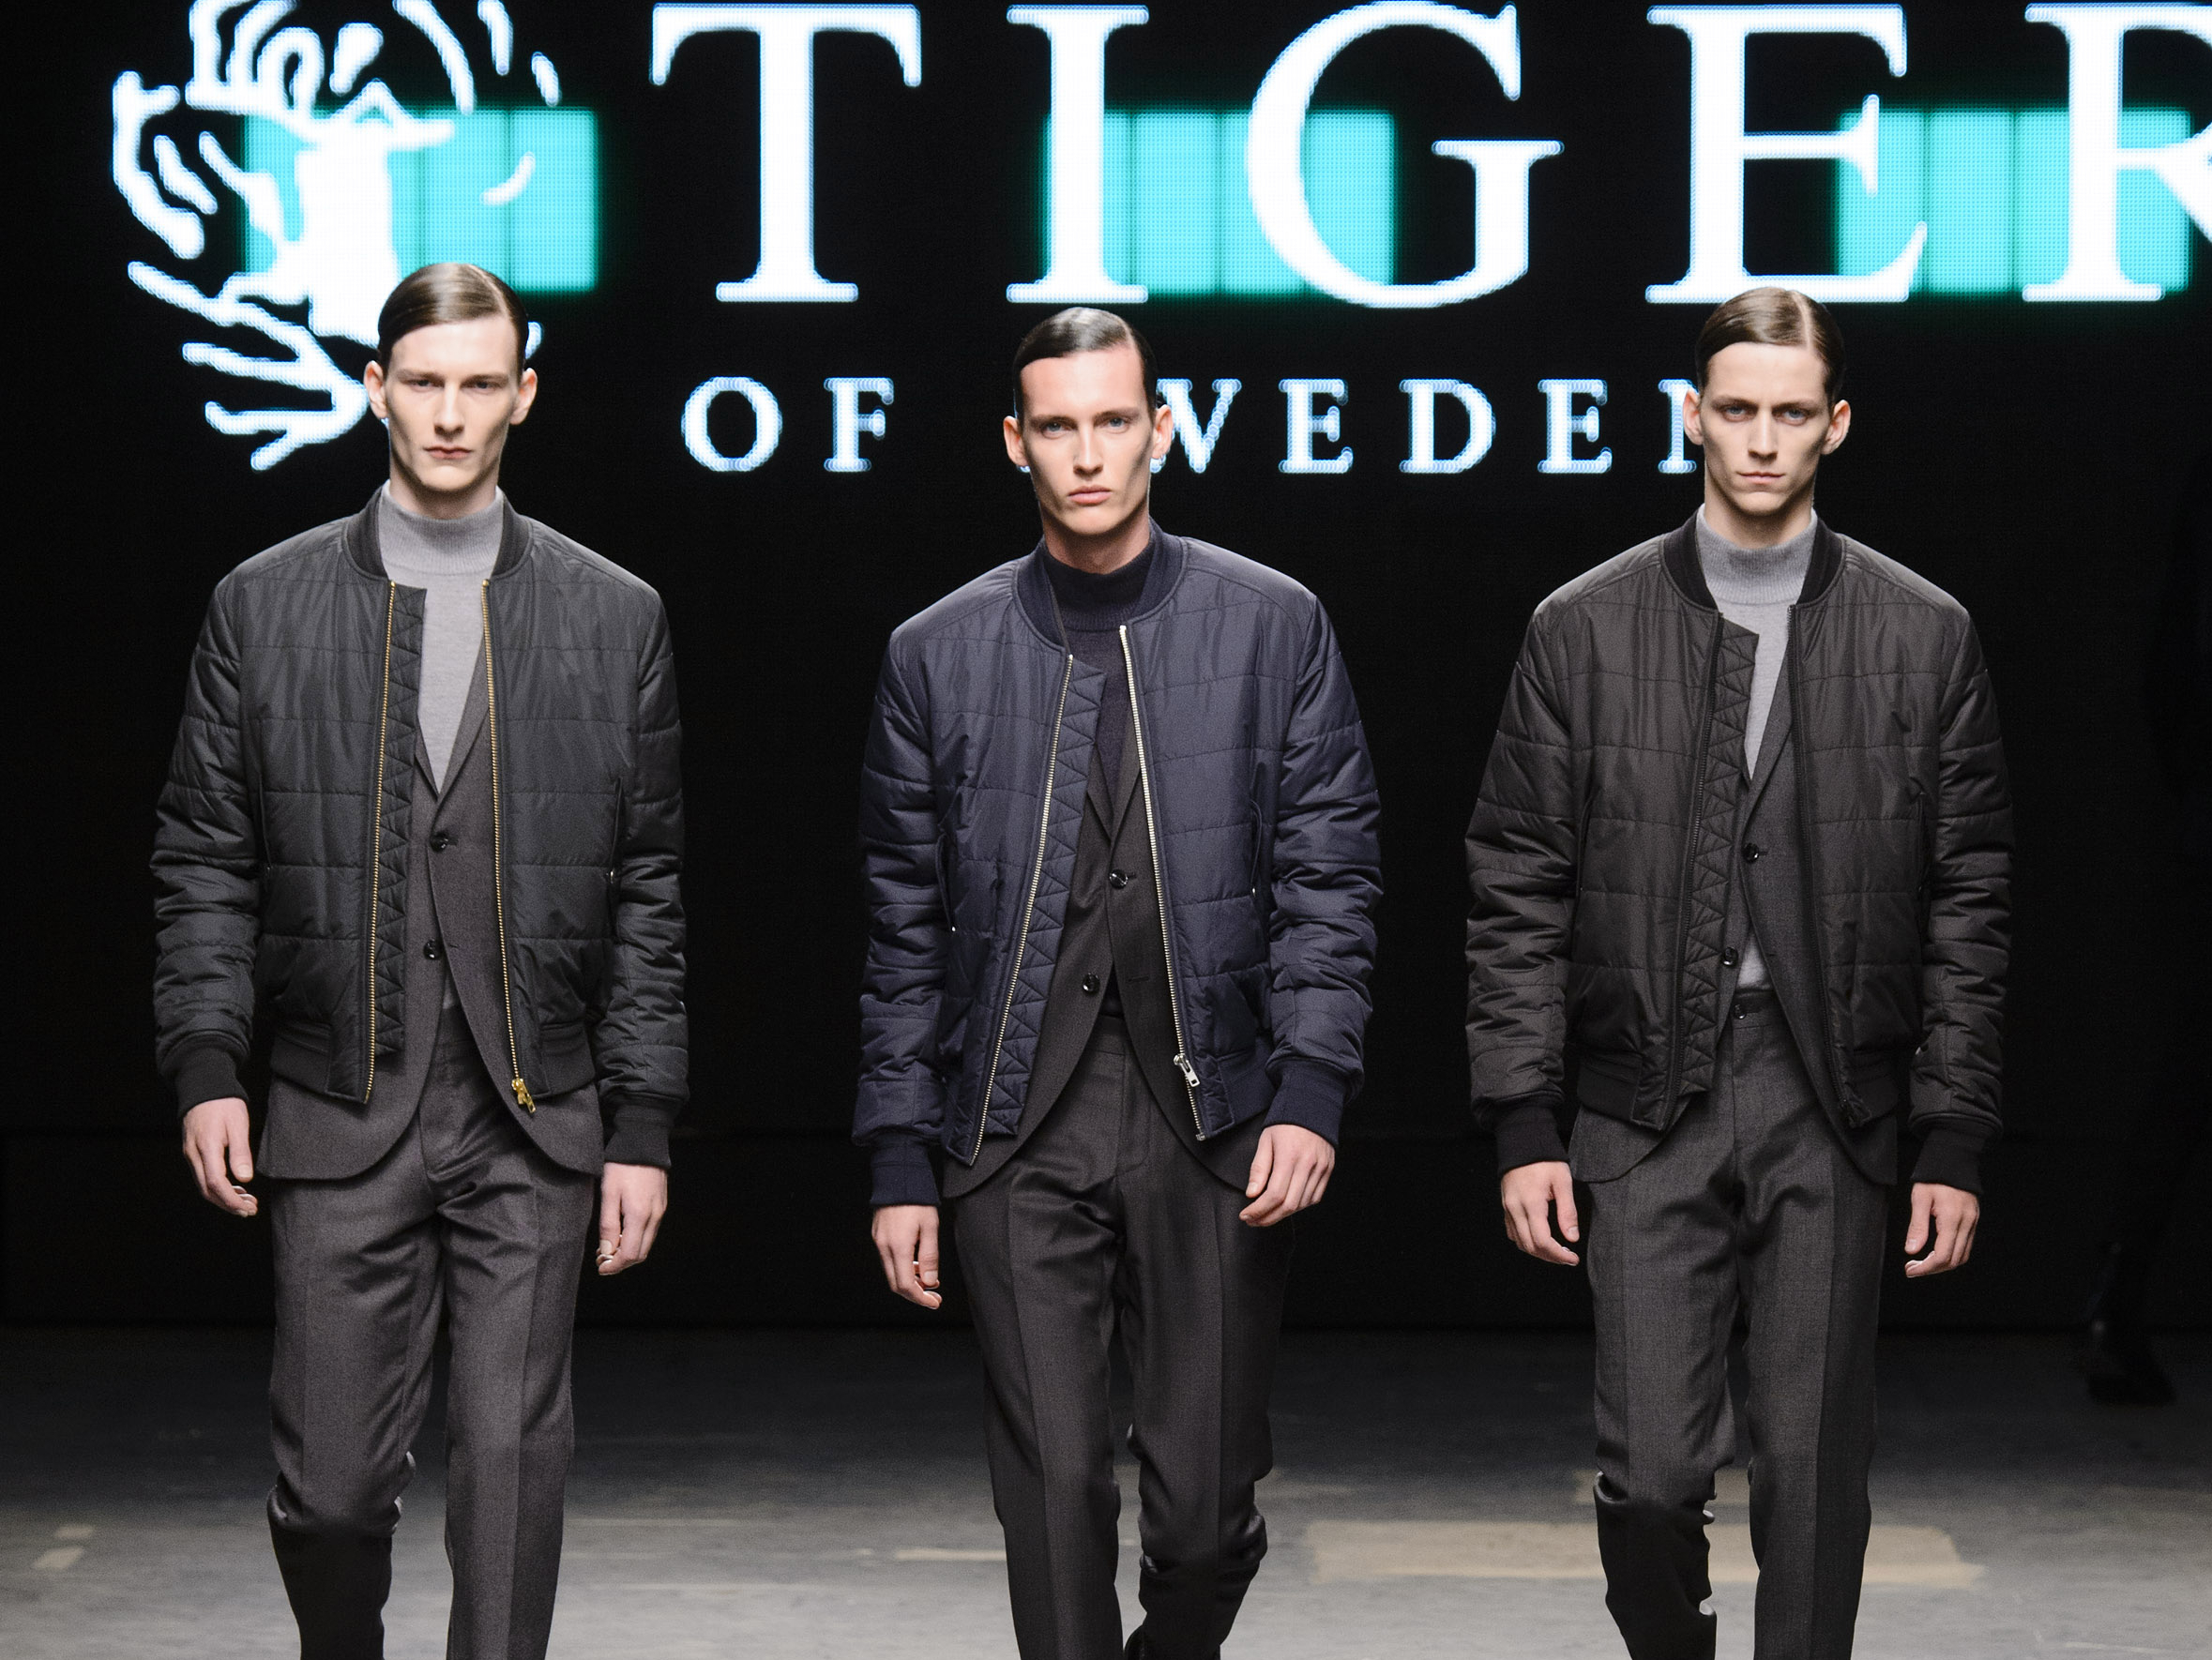 Live Tiger of Sweden Men's Fashion Show